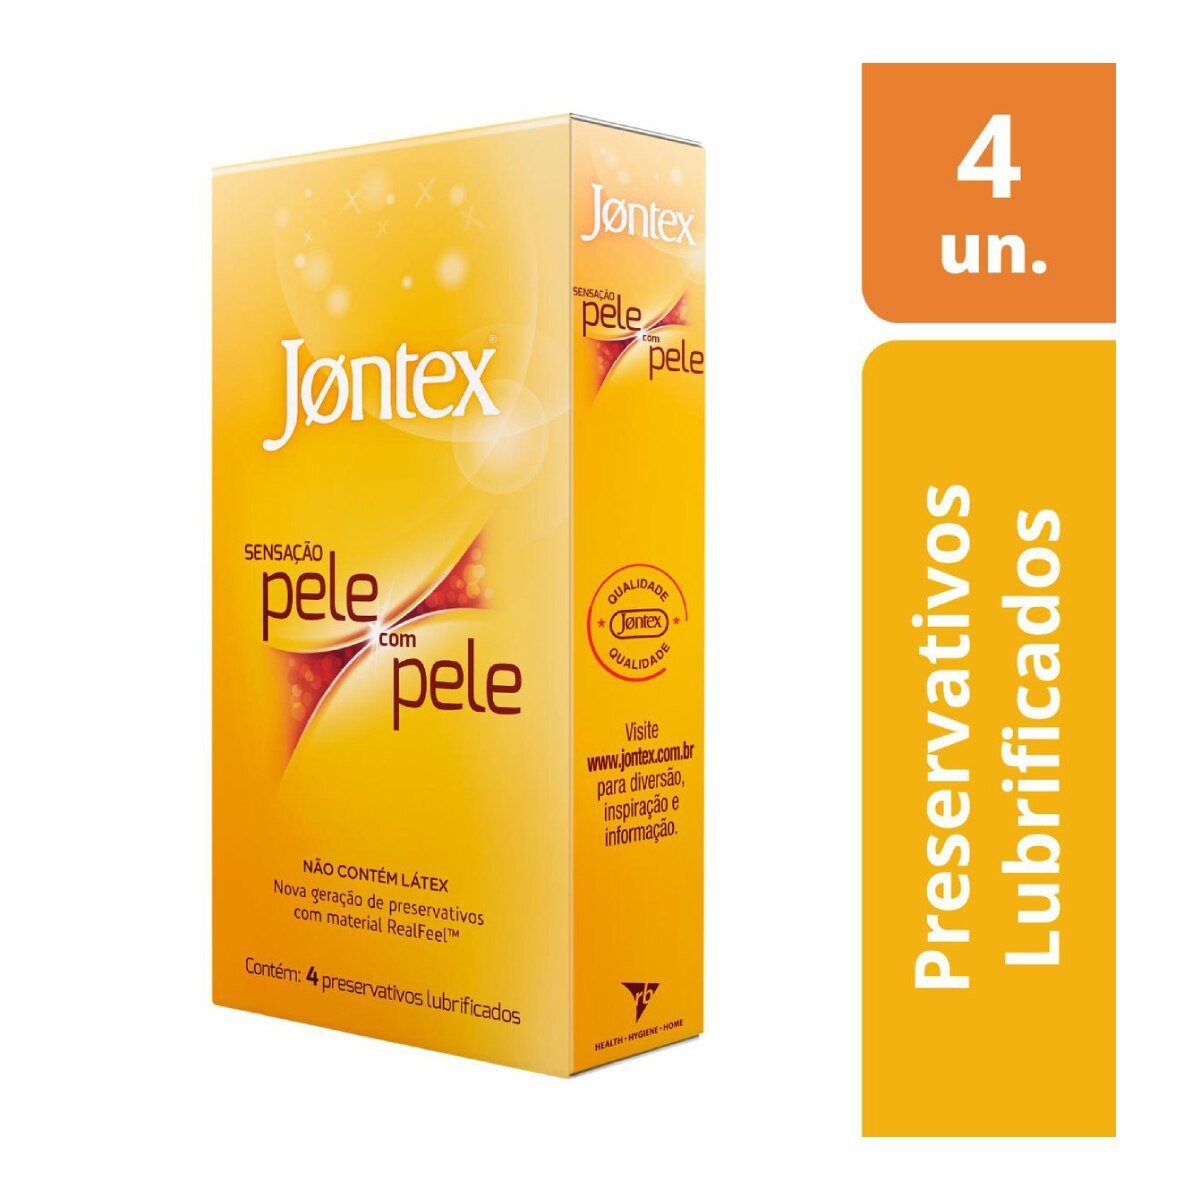 Preservativo Jontex Lubrificado Sensacao Pele com Pele 4 Unidades